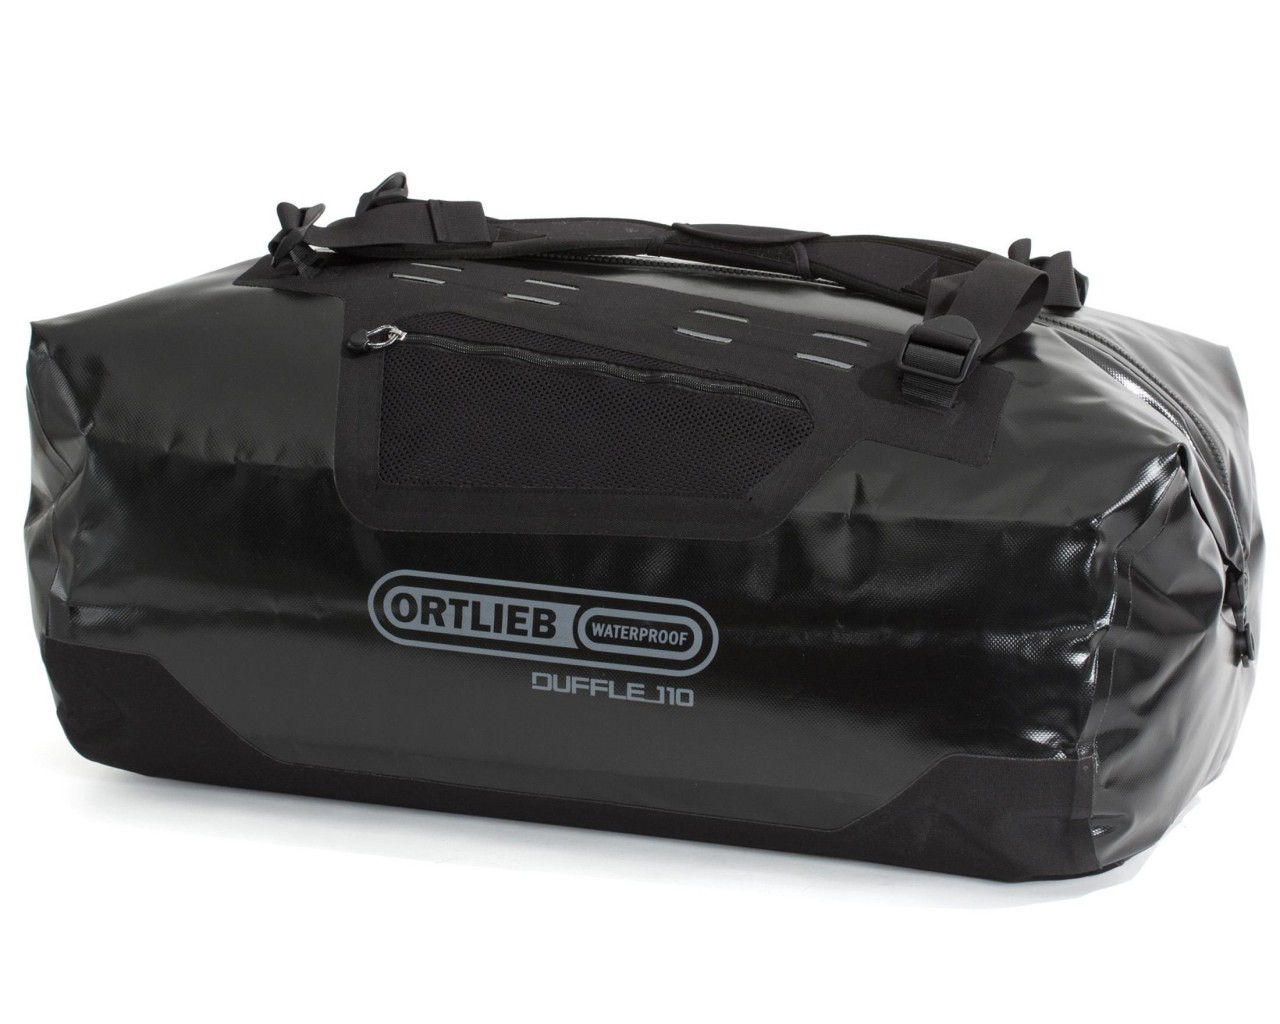 Ortlieb Duffle waterproof bag 110 liter | black